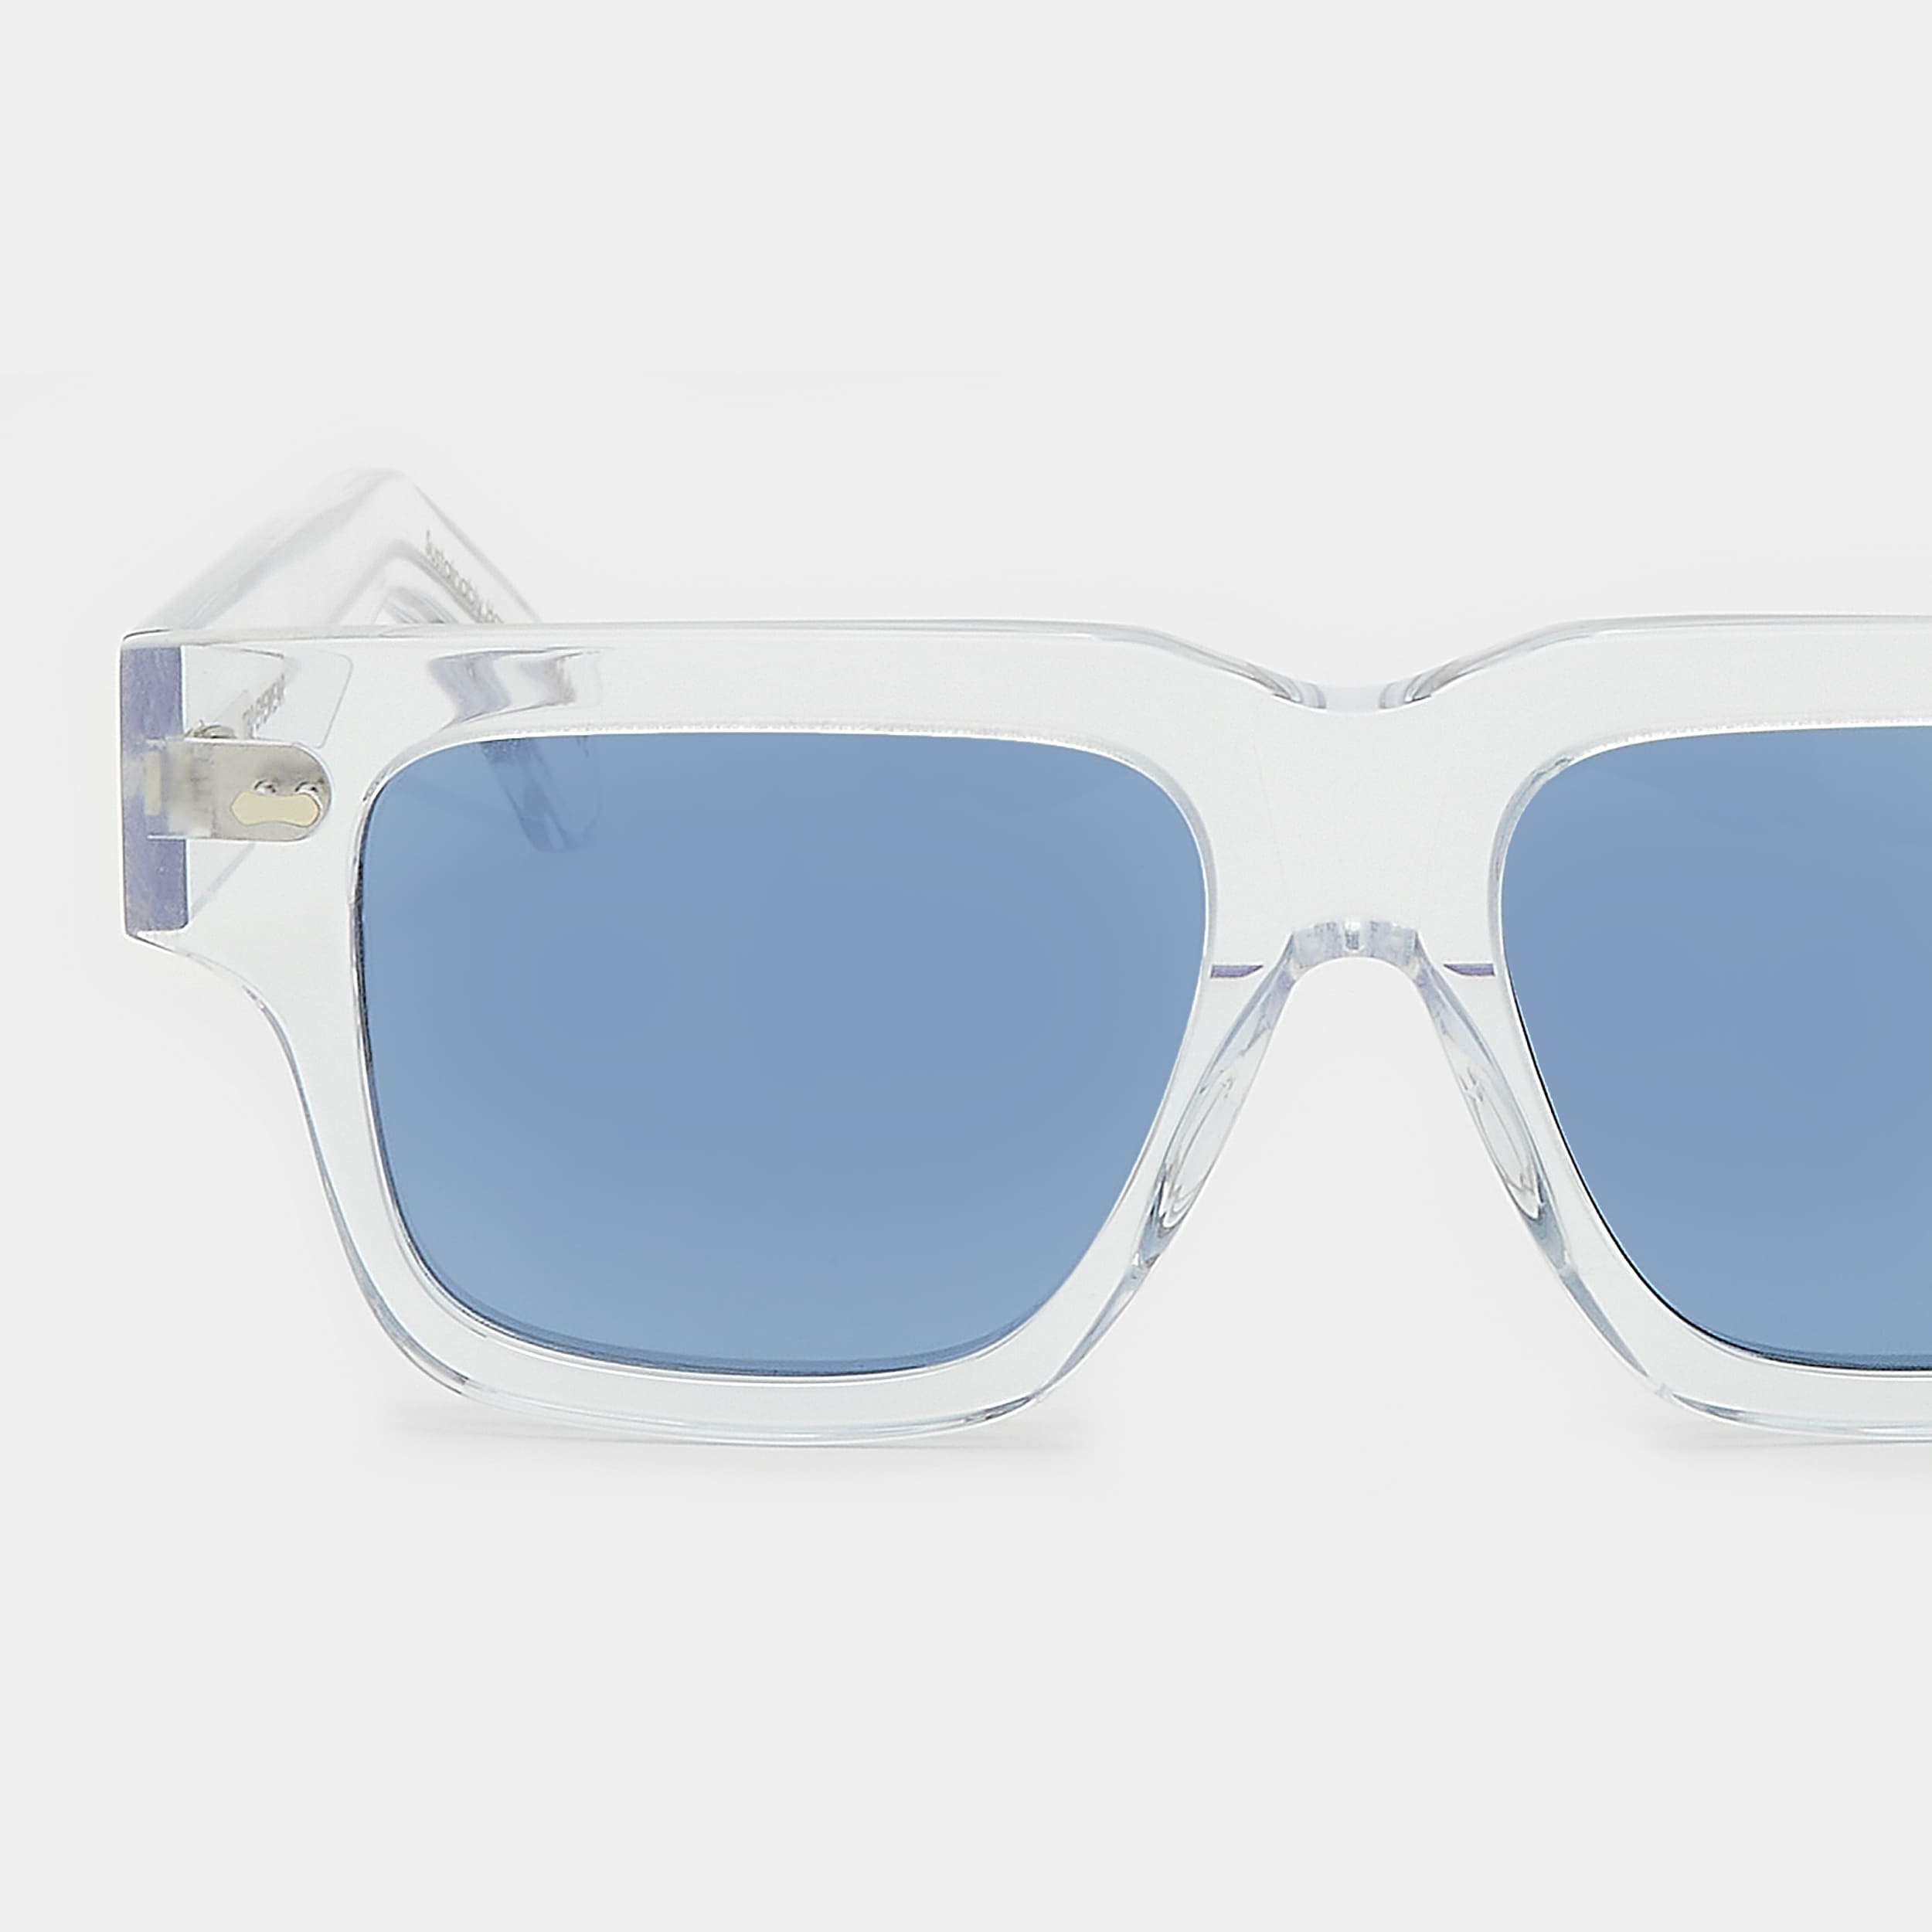 sunglasses-tela-eco-transparent-blue-sustainable-tbd-eyewear-lens